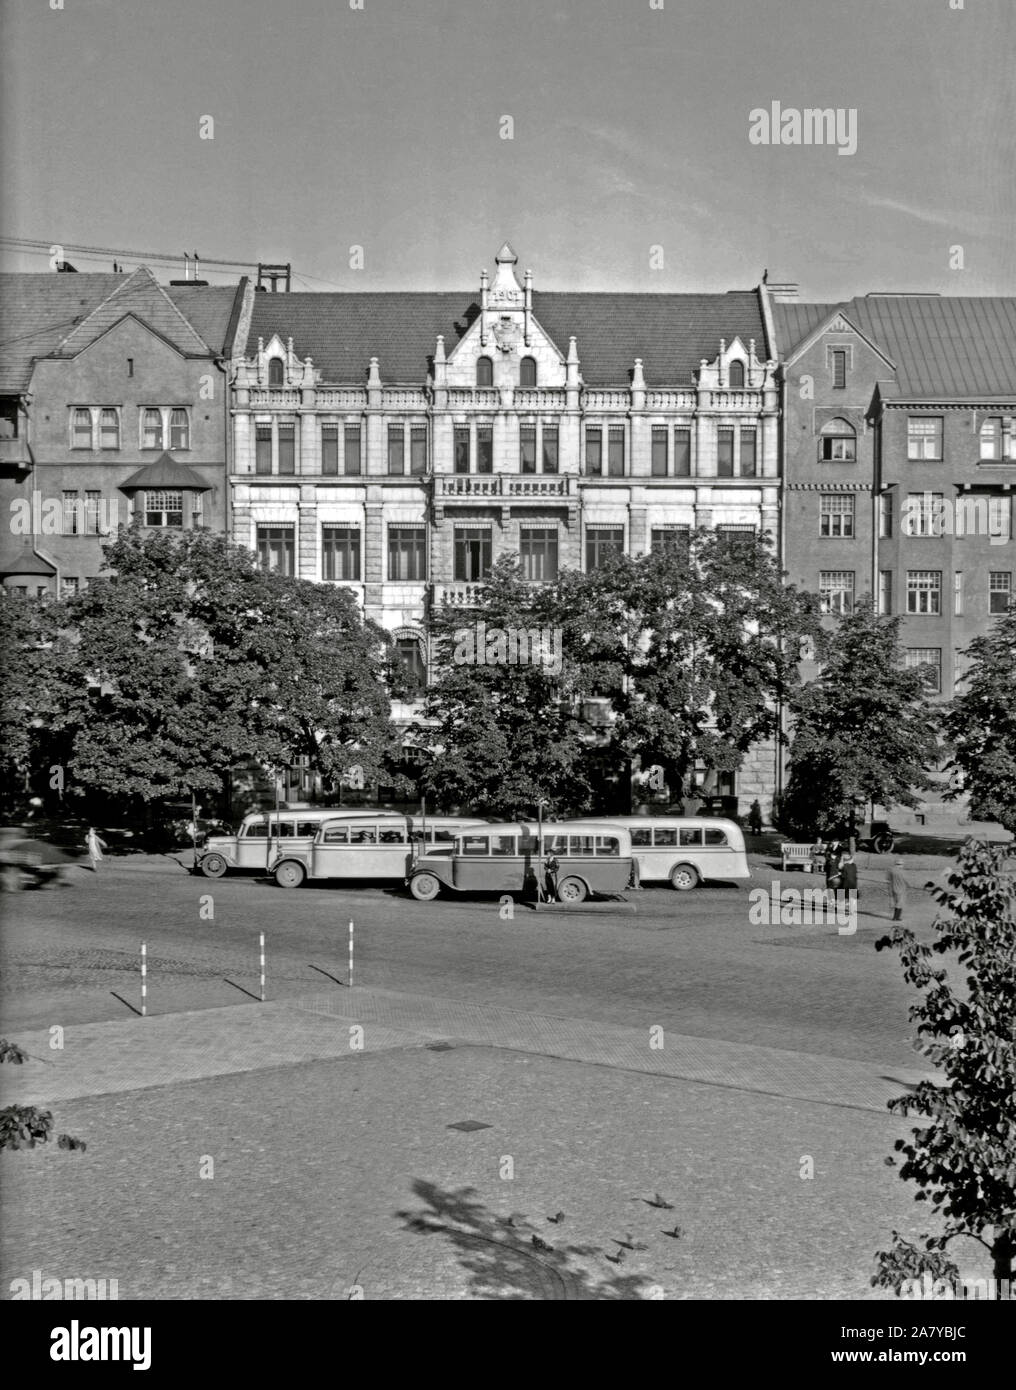 Yleisradio's headquarters in Fabianinkatu 15, Helsinki, 1930's. Stock Photo